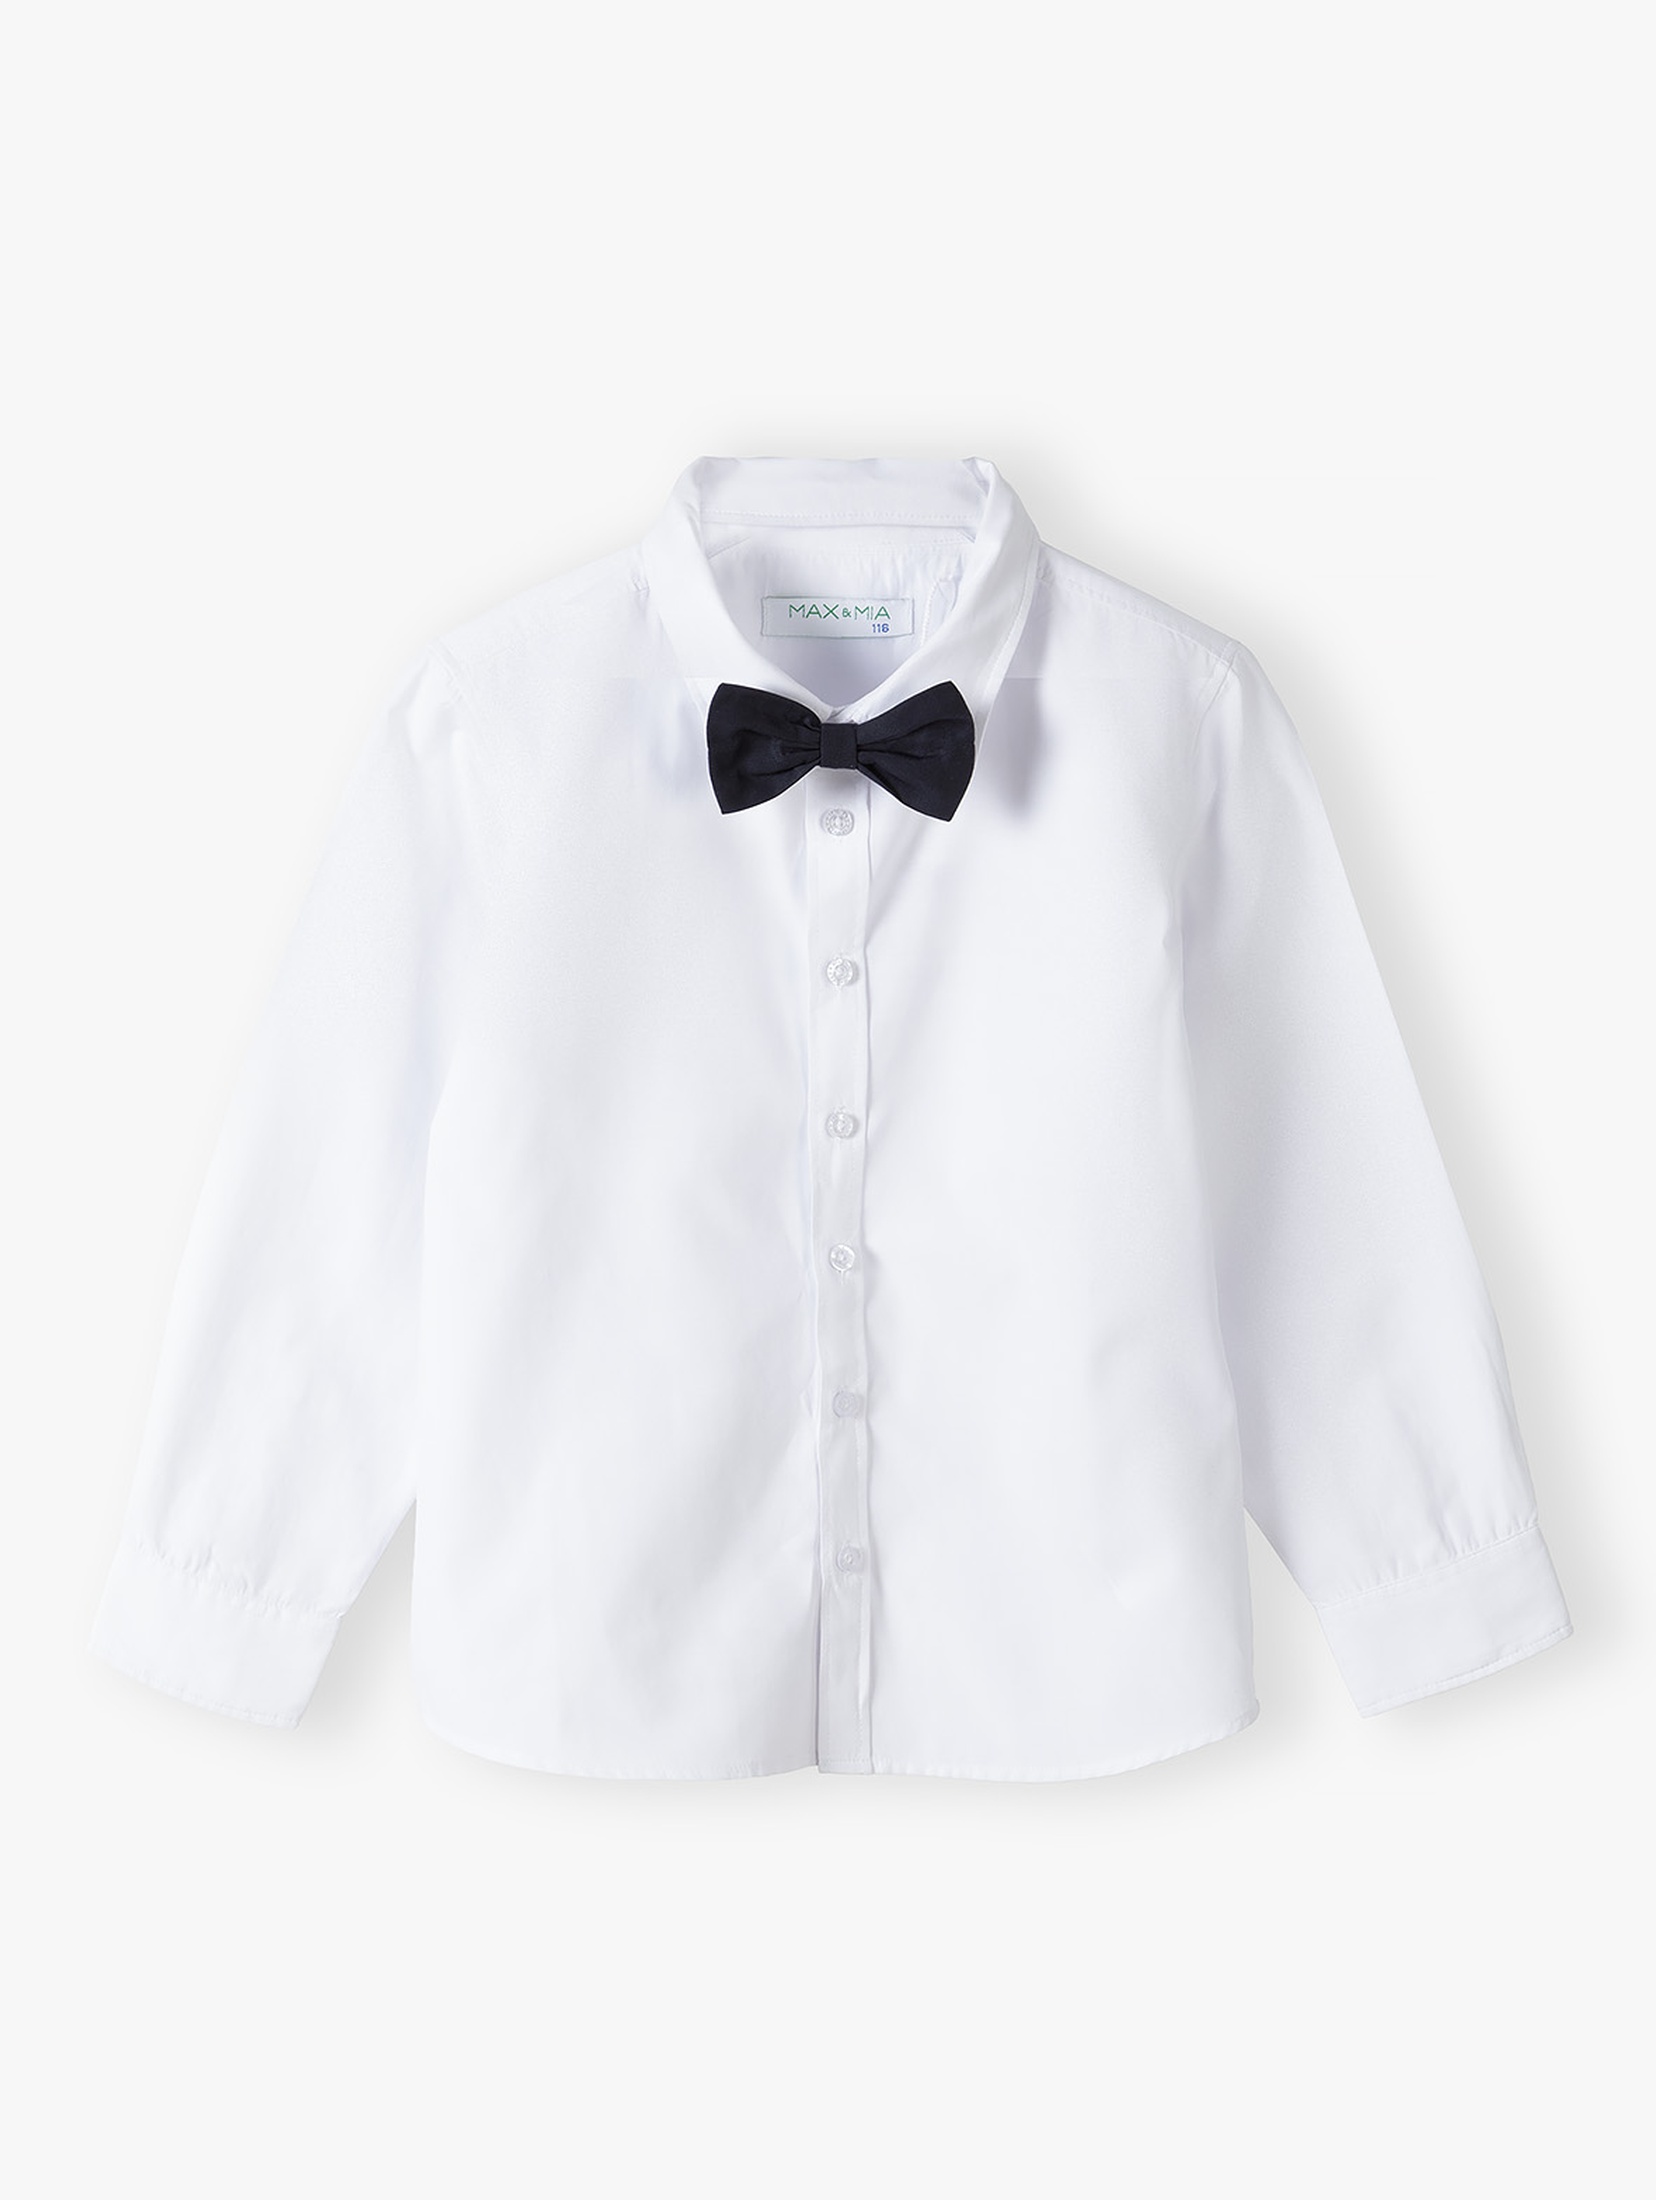 Elegancki komplet chłopięcy- biała koszula z kamizelką i muszką